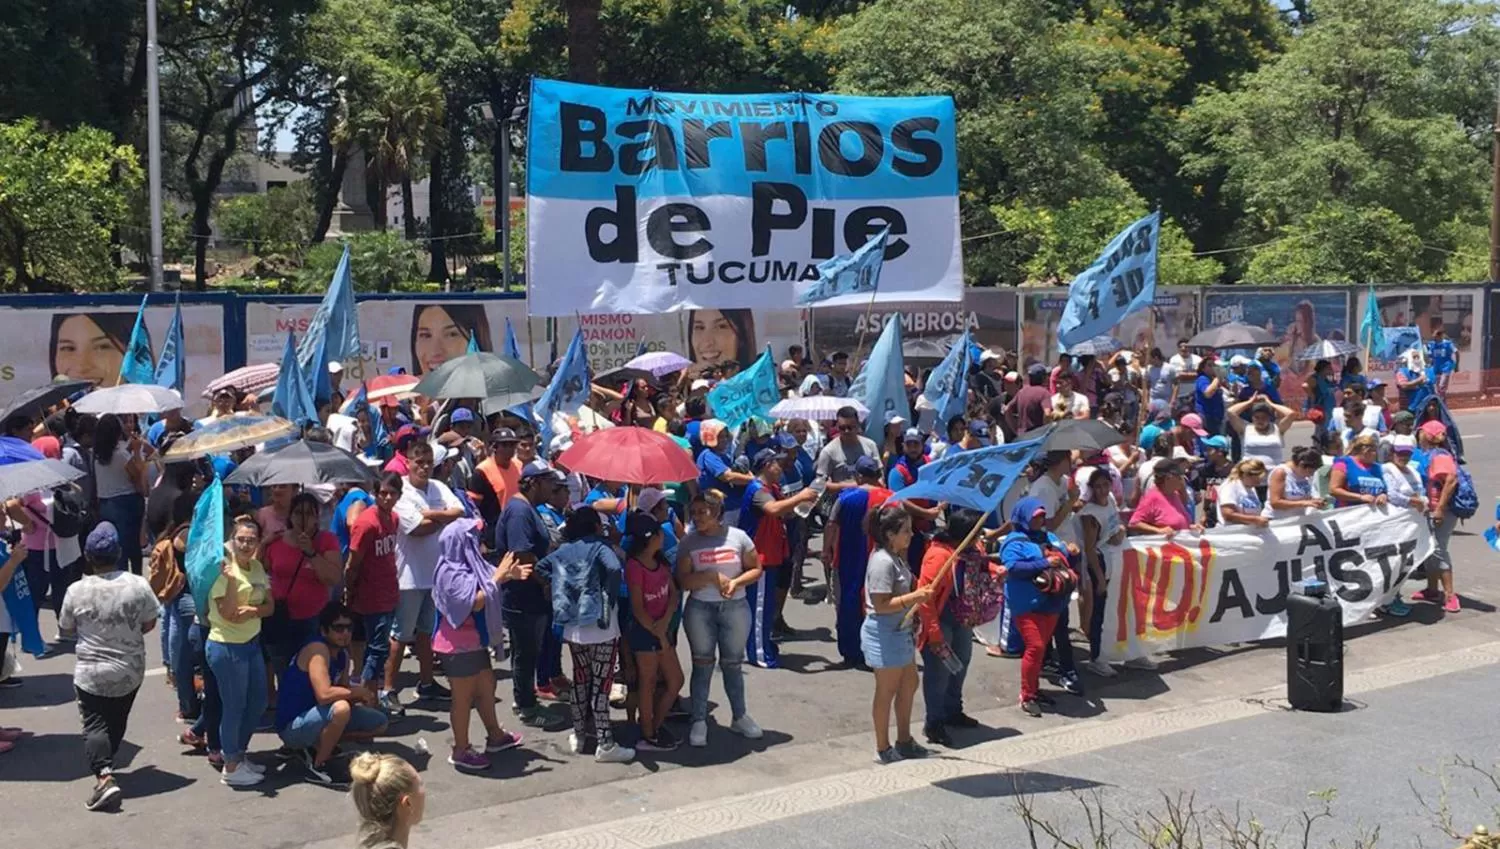 El movimiento Barrios de Pie marchará mañana por el microcentro tucumano